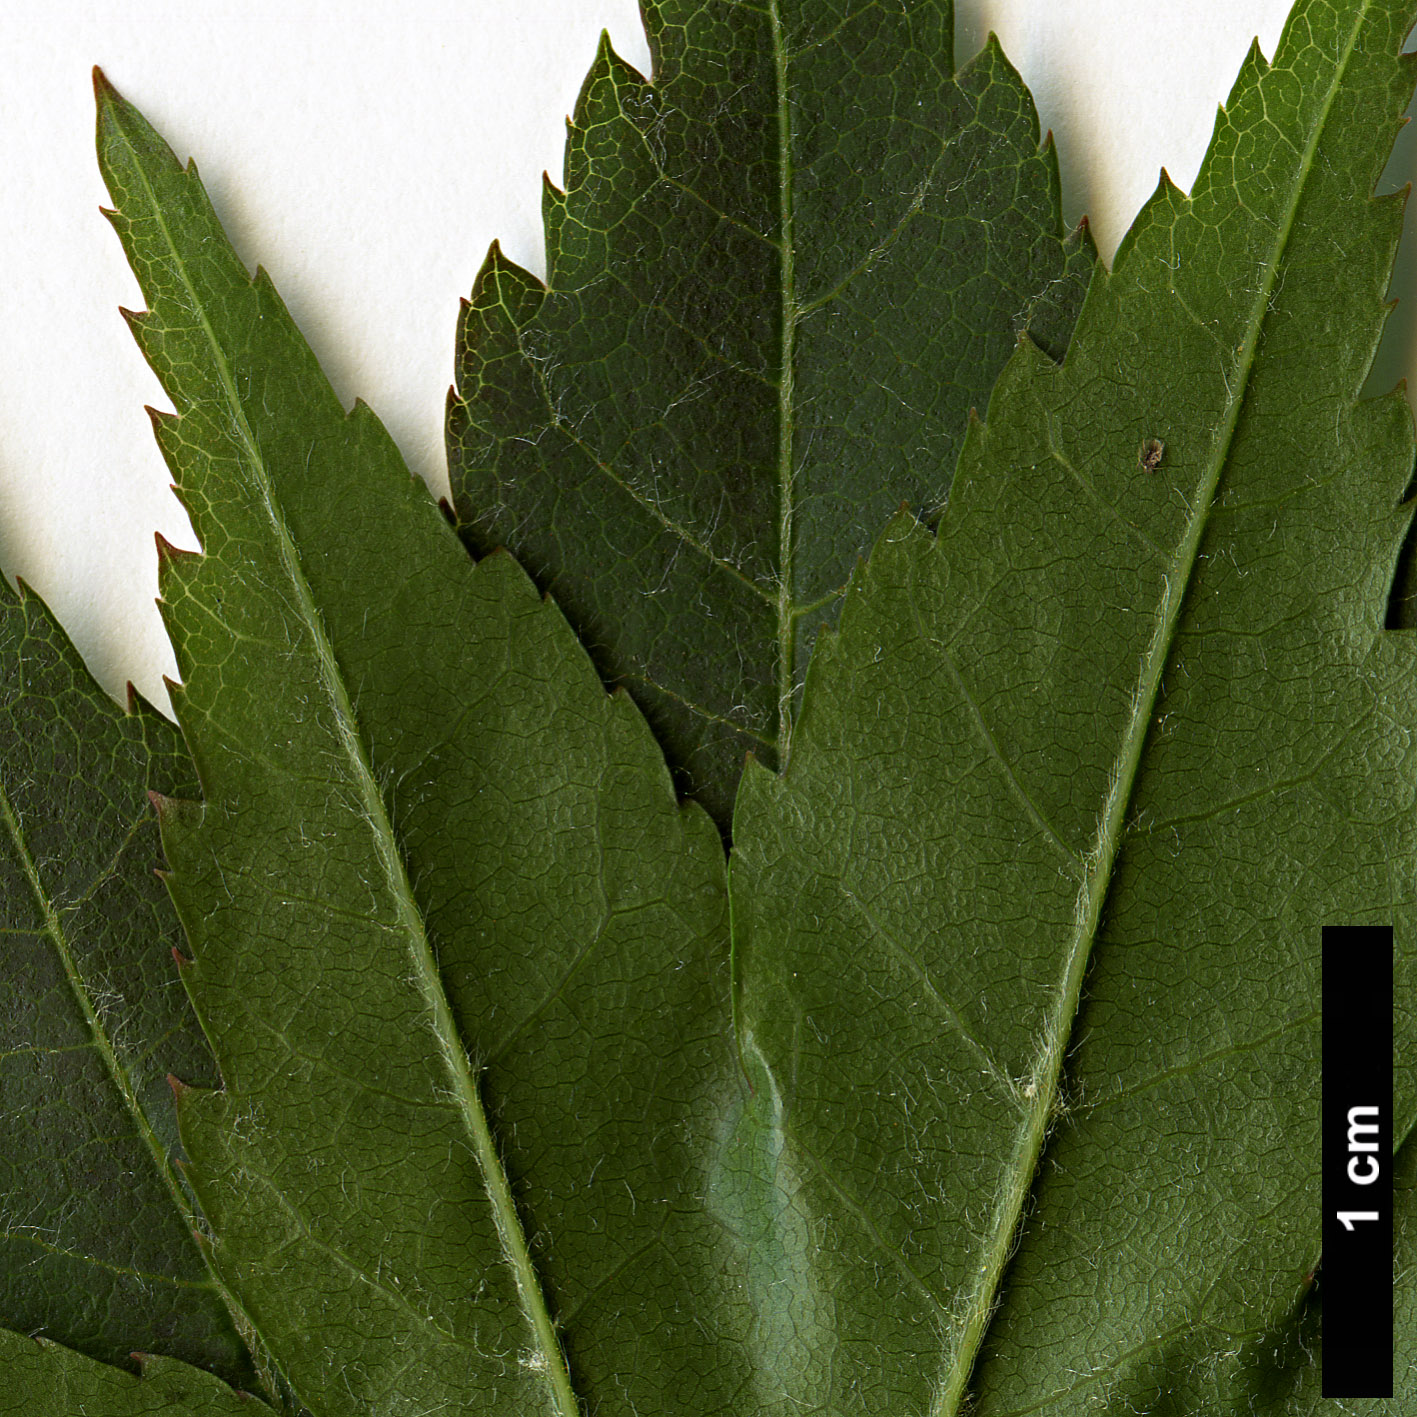 High resolution image: Family: Sapindaceae - Genus: Acer - Taxon: duplicatoserratum